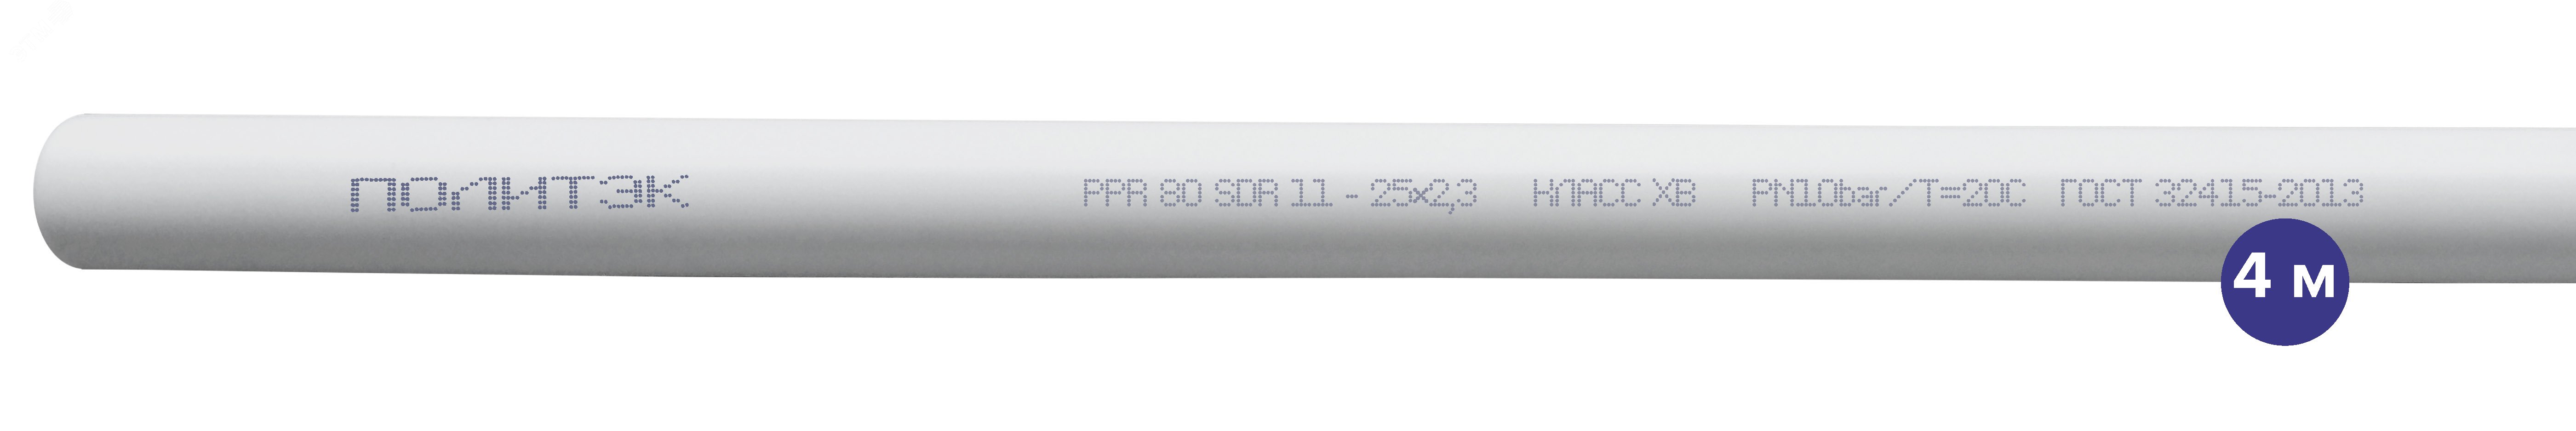 Труба полипропиленовая 25 х 2.3 SDR 11 PN 10 PPR белая, хлыст 4м 90201025023 Политэк - превью 2